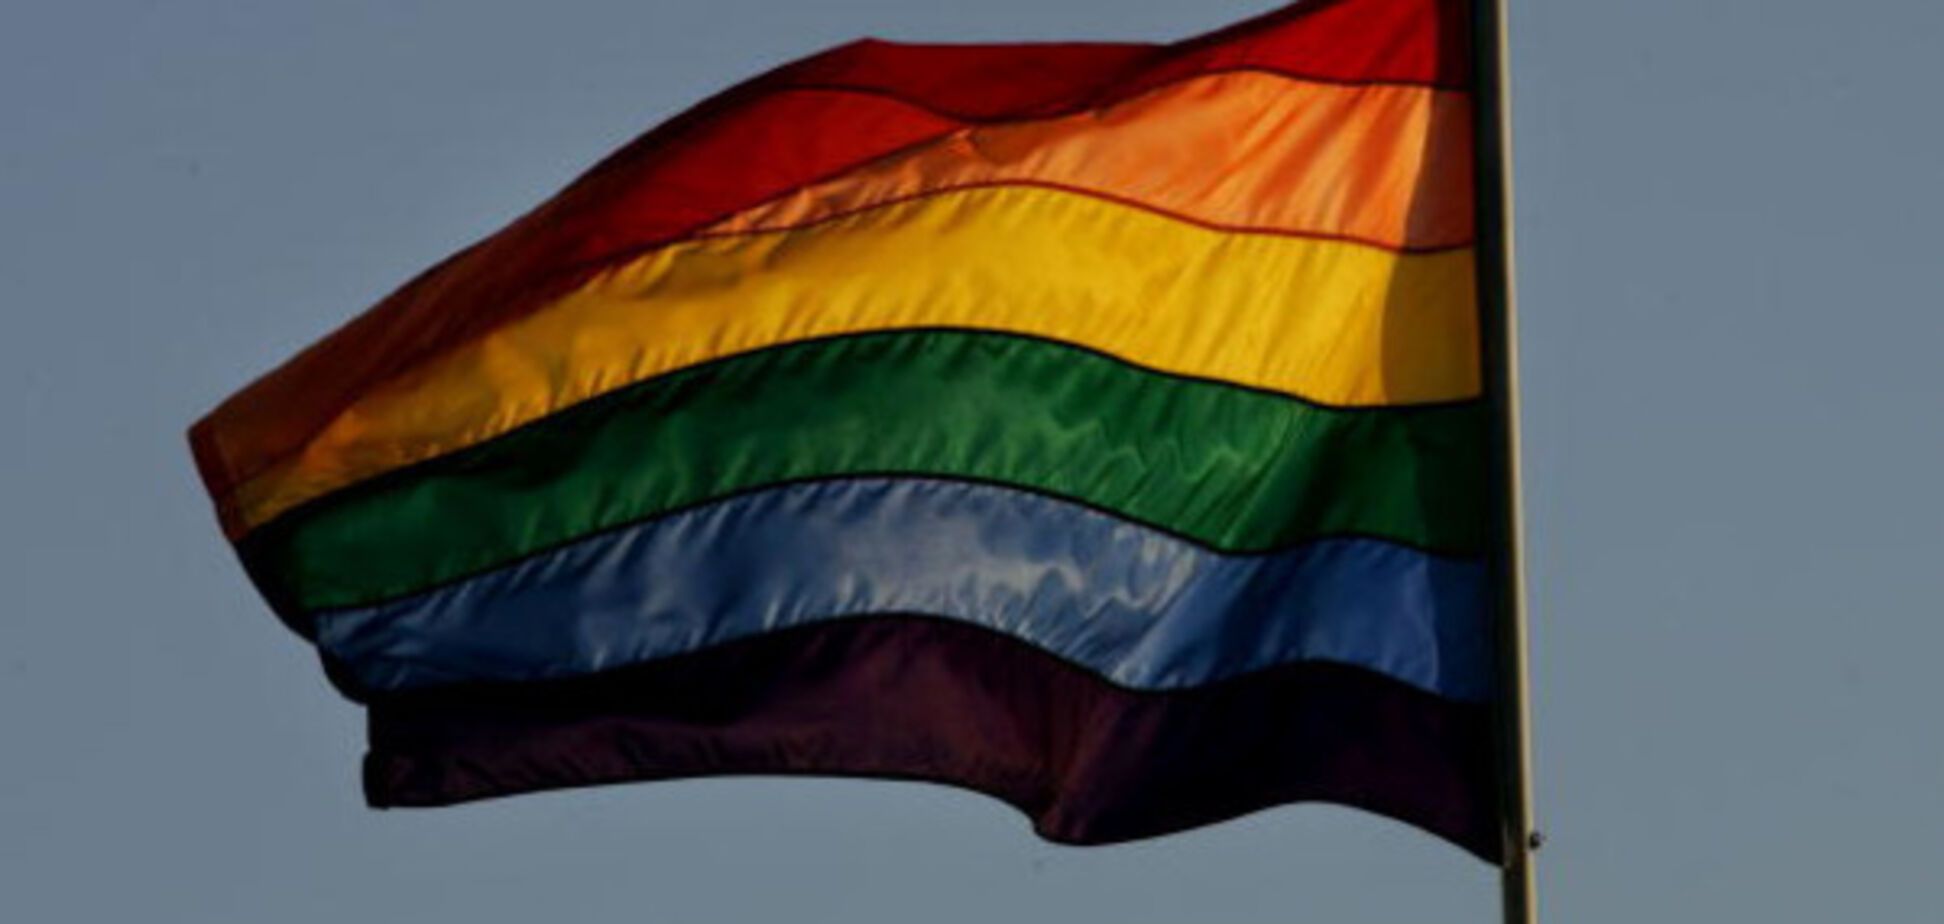 прапор ЛГБТ